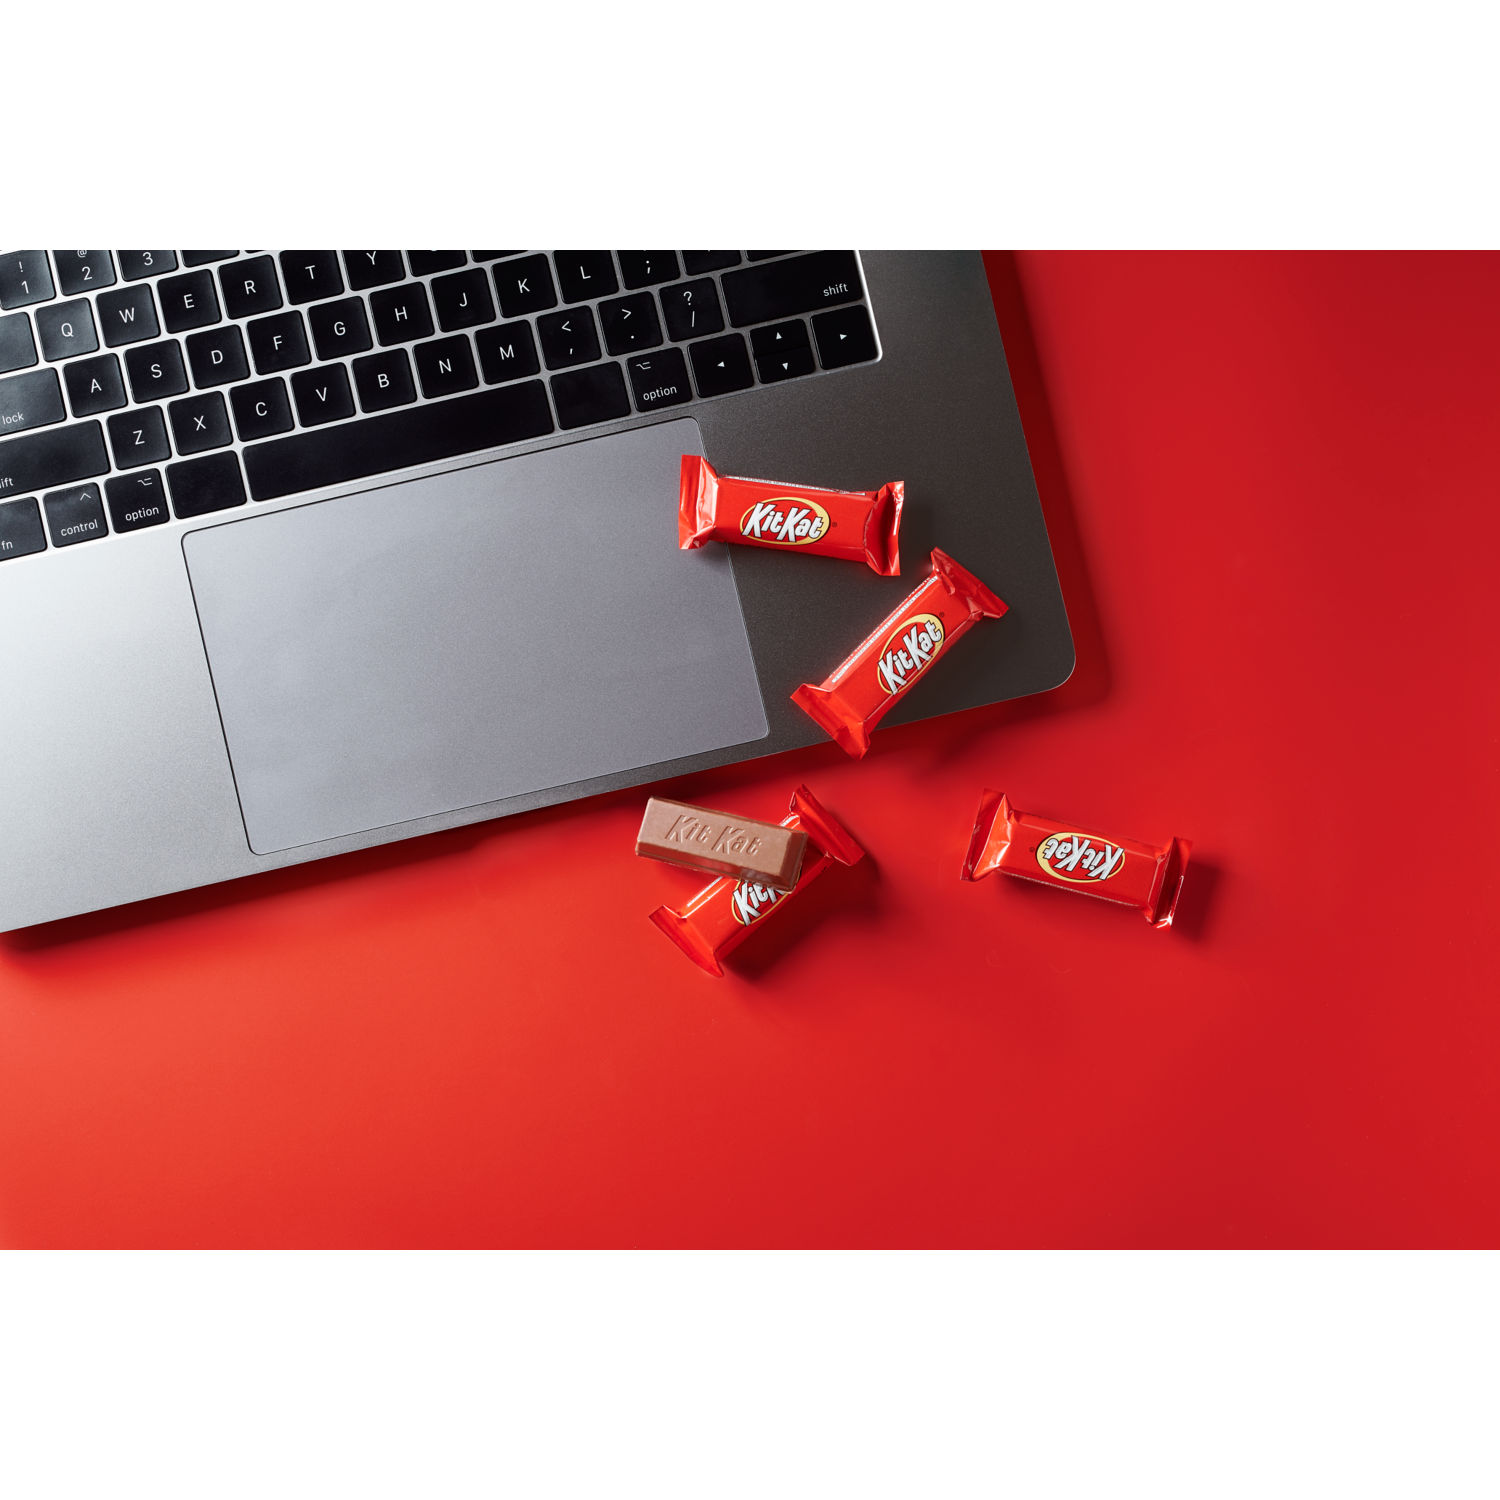 KIT KAT® Miniatures Assorted Candy Bars, 10.1 oz bag